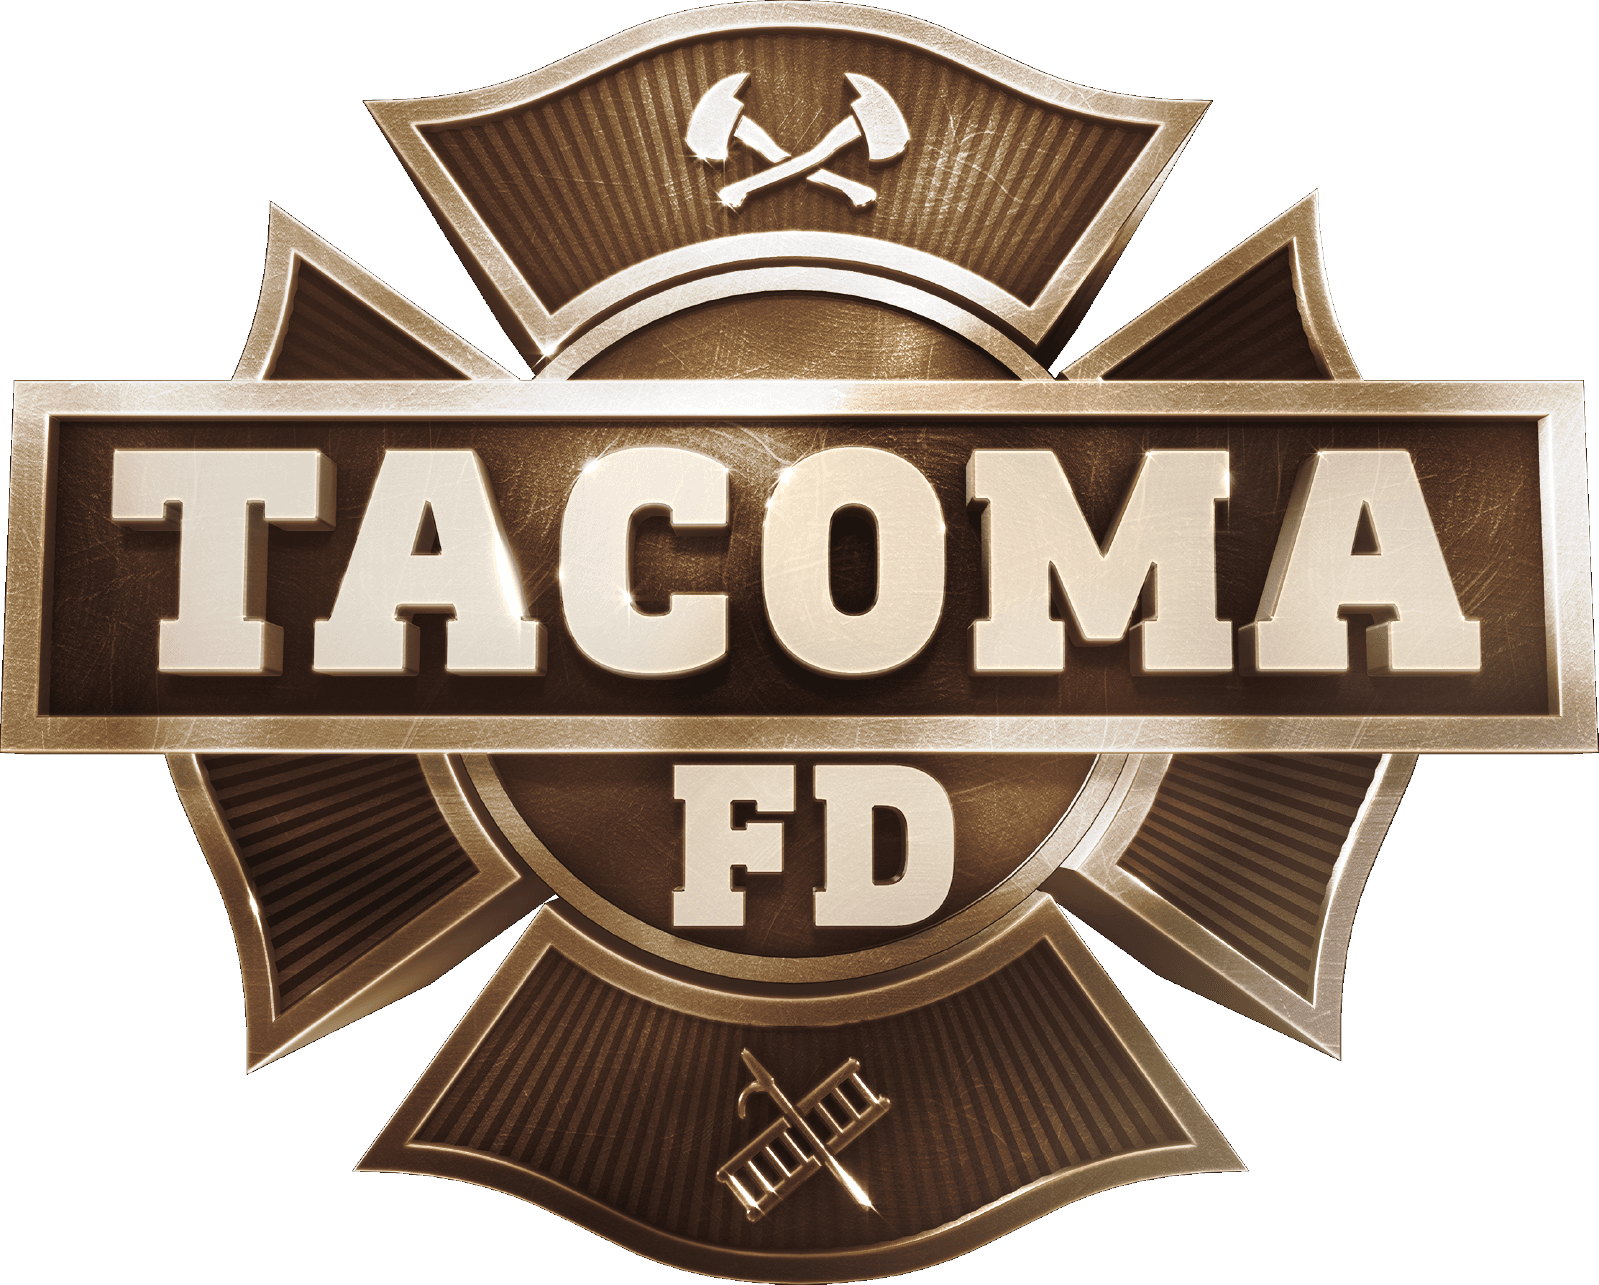 Tacoma FD logo